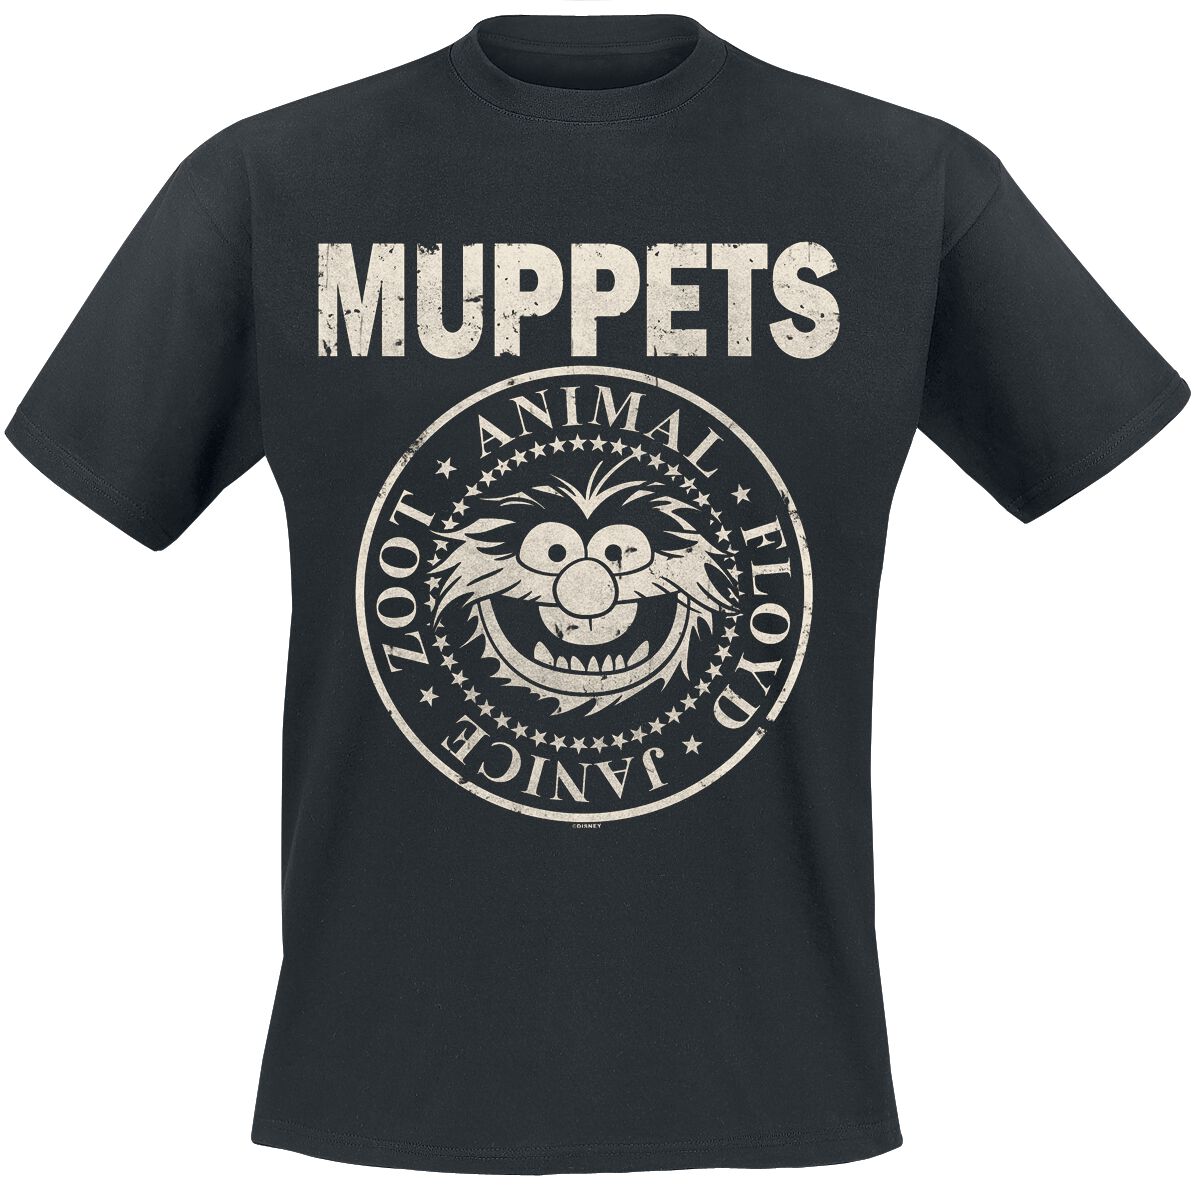 Die Muppets Animal - Rock ´n Roll T-Shirt schwarz in XXL